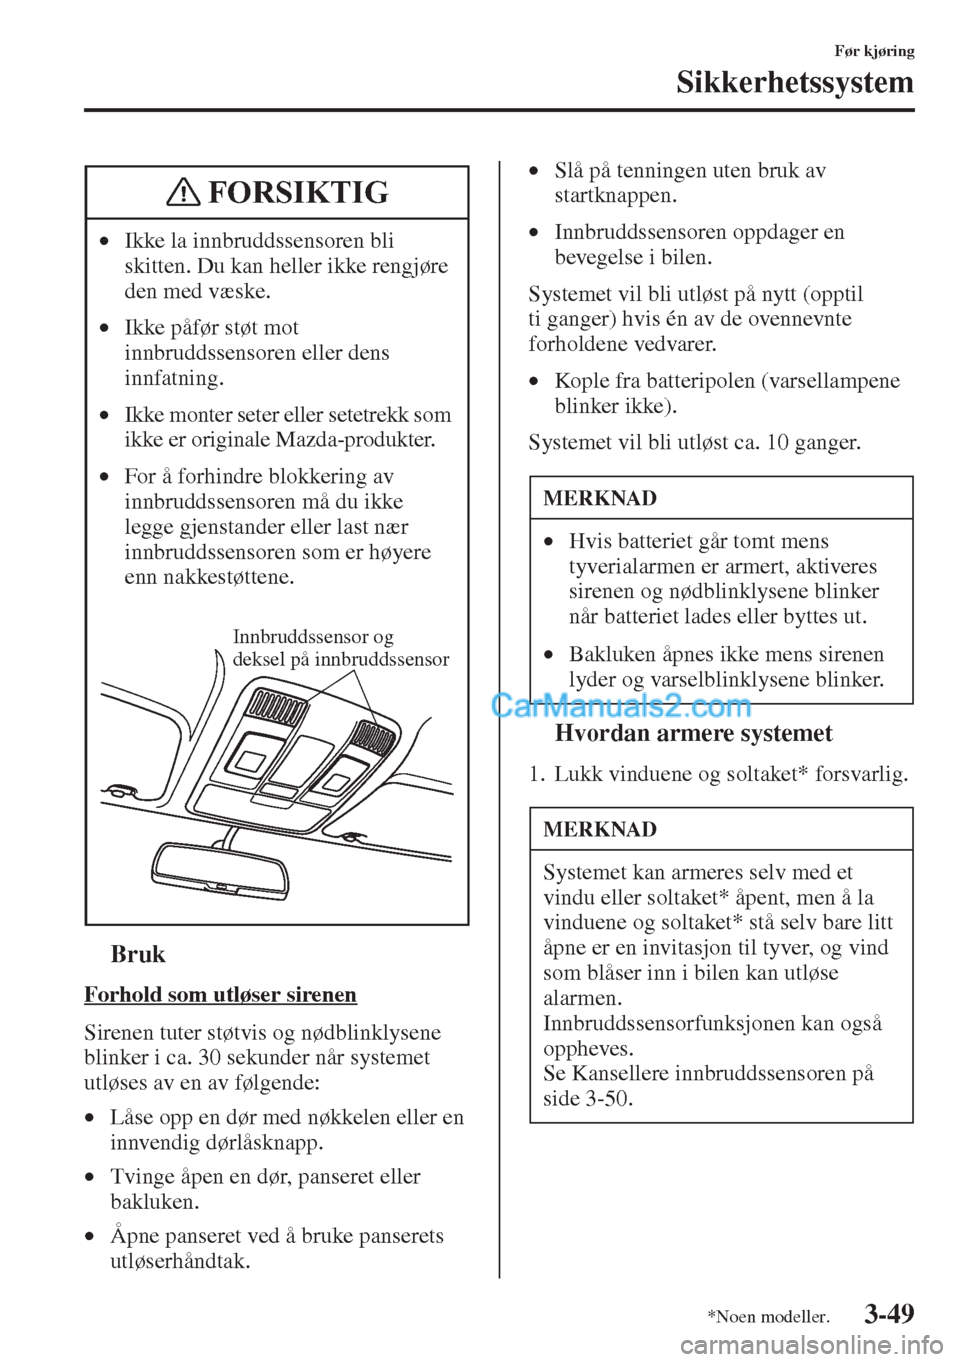 MAZDA MODEL CX-5 2015  Brukerhåndbok (in Norwegian) 3-49
Før kjøring
Sikkerhetssystem
tBruk
Forhold som utløser sirenen
Sirenen tuter støtvis og nødblinklysene 
blinker i ca. 30 sekunder når systemet 
utløses av en av følgende:
•Låse opp en 